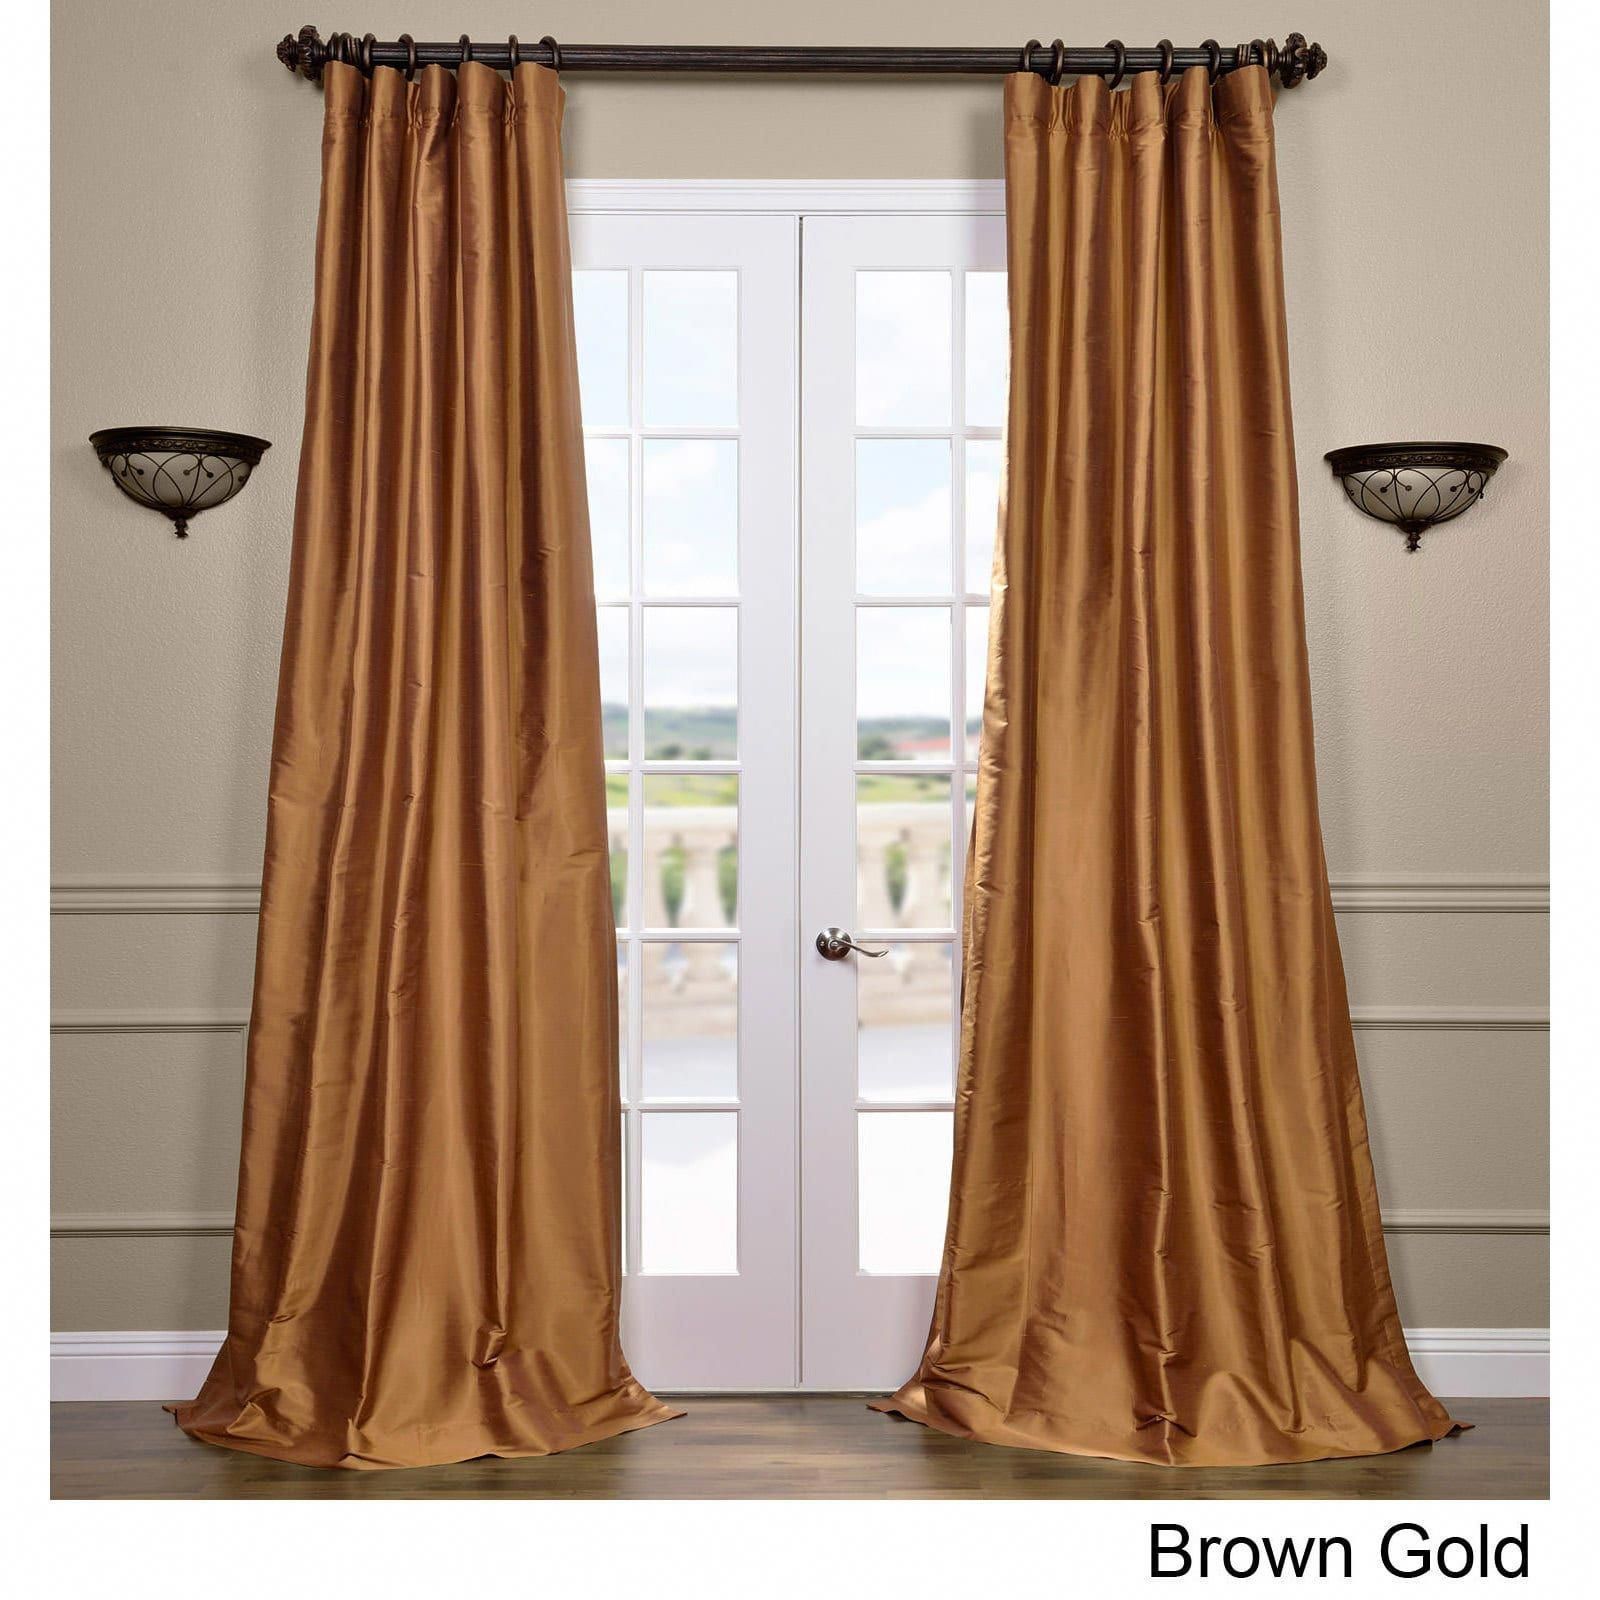 Curtain 1. Золотые шторы. Золотистые шторы. Шторы золотистого цвета. Бронзовые шторы в интерьере.